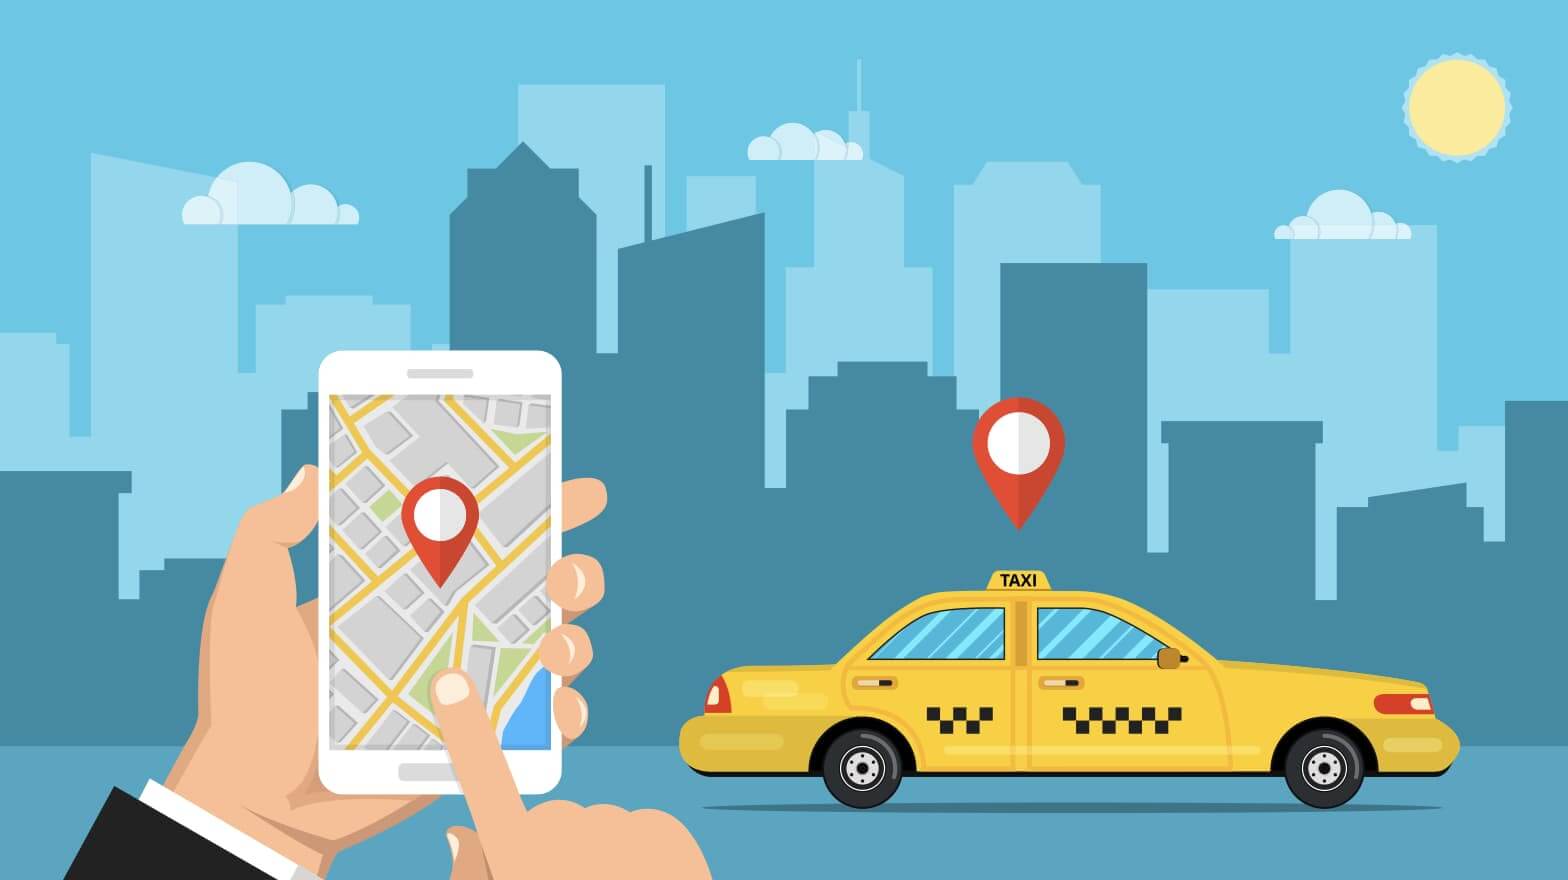 山梨で使えるタクシーアプリとクーポン情報